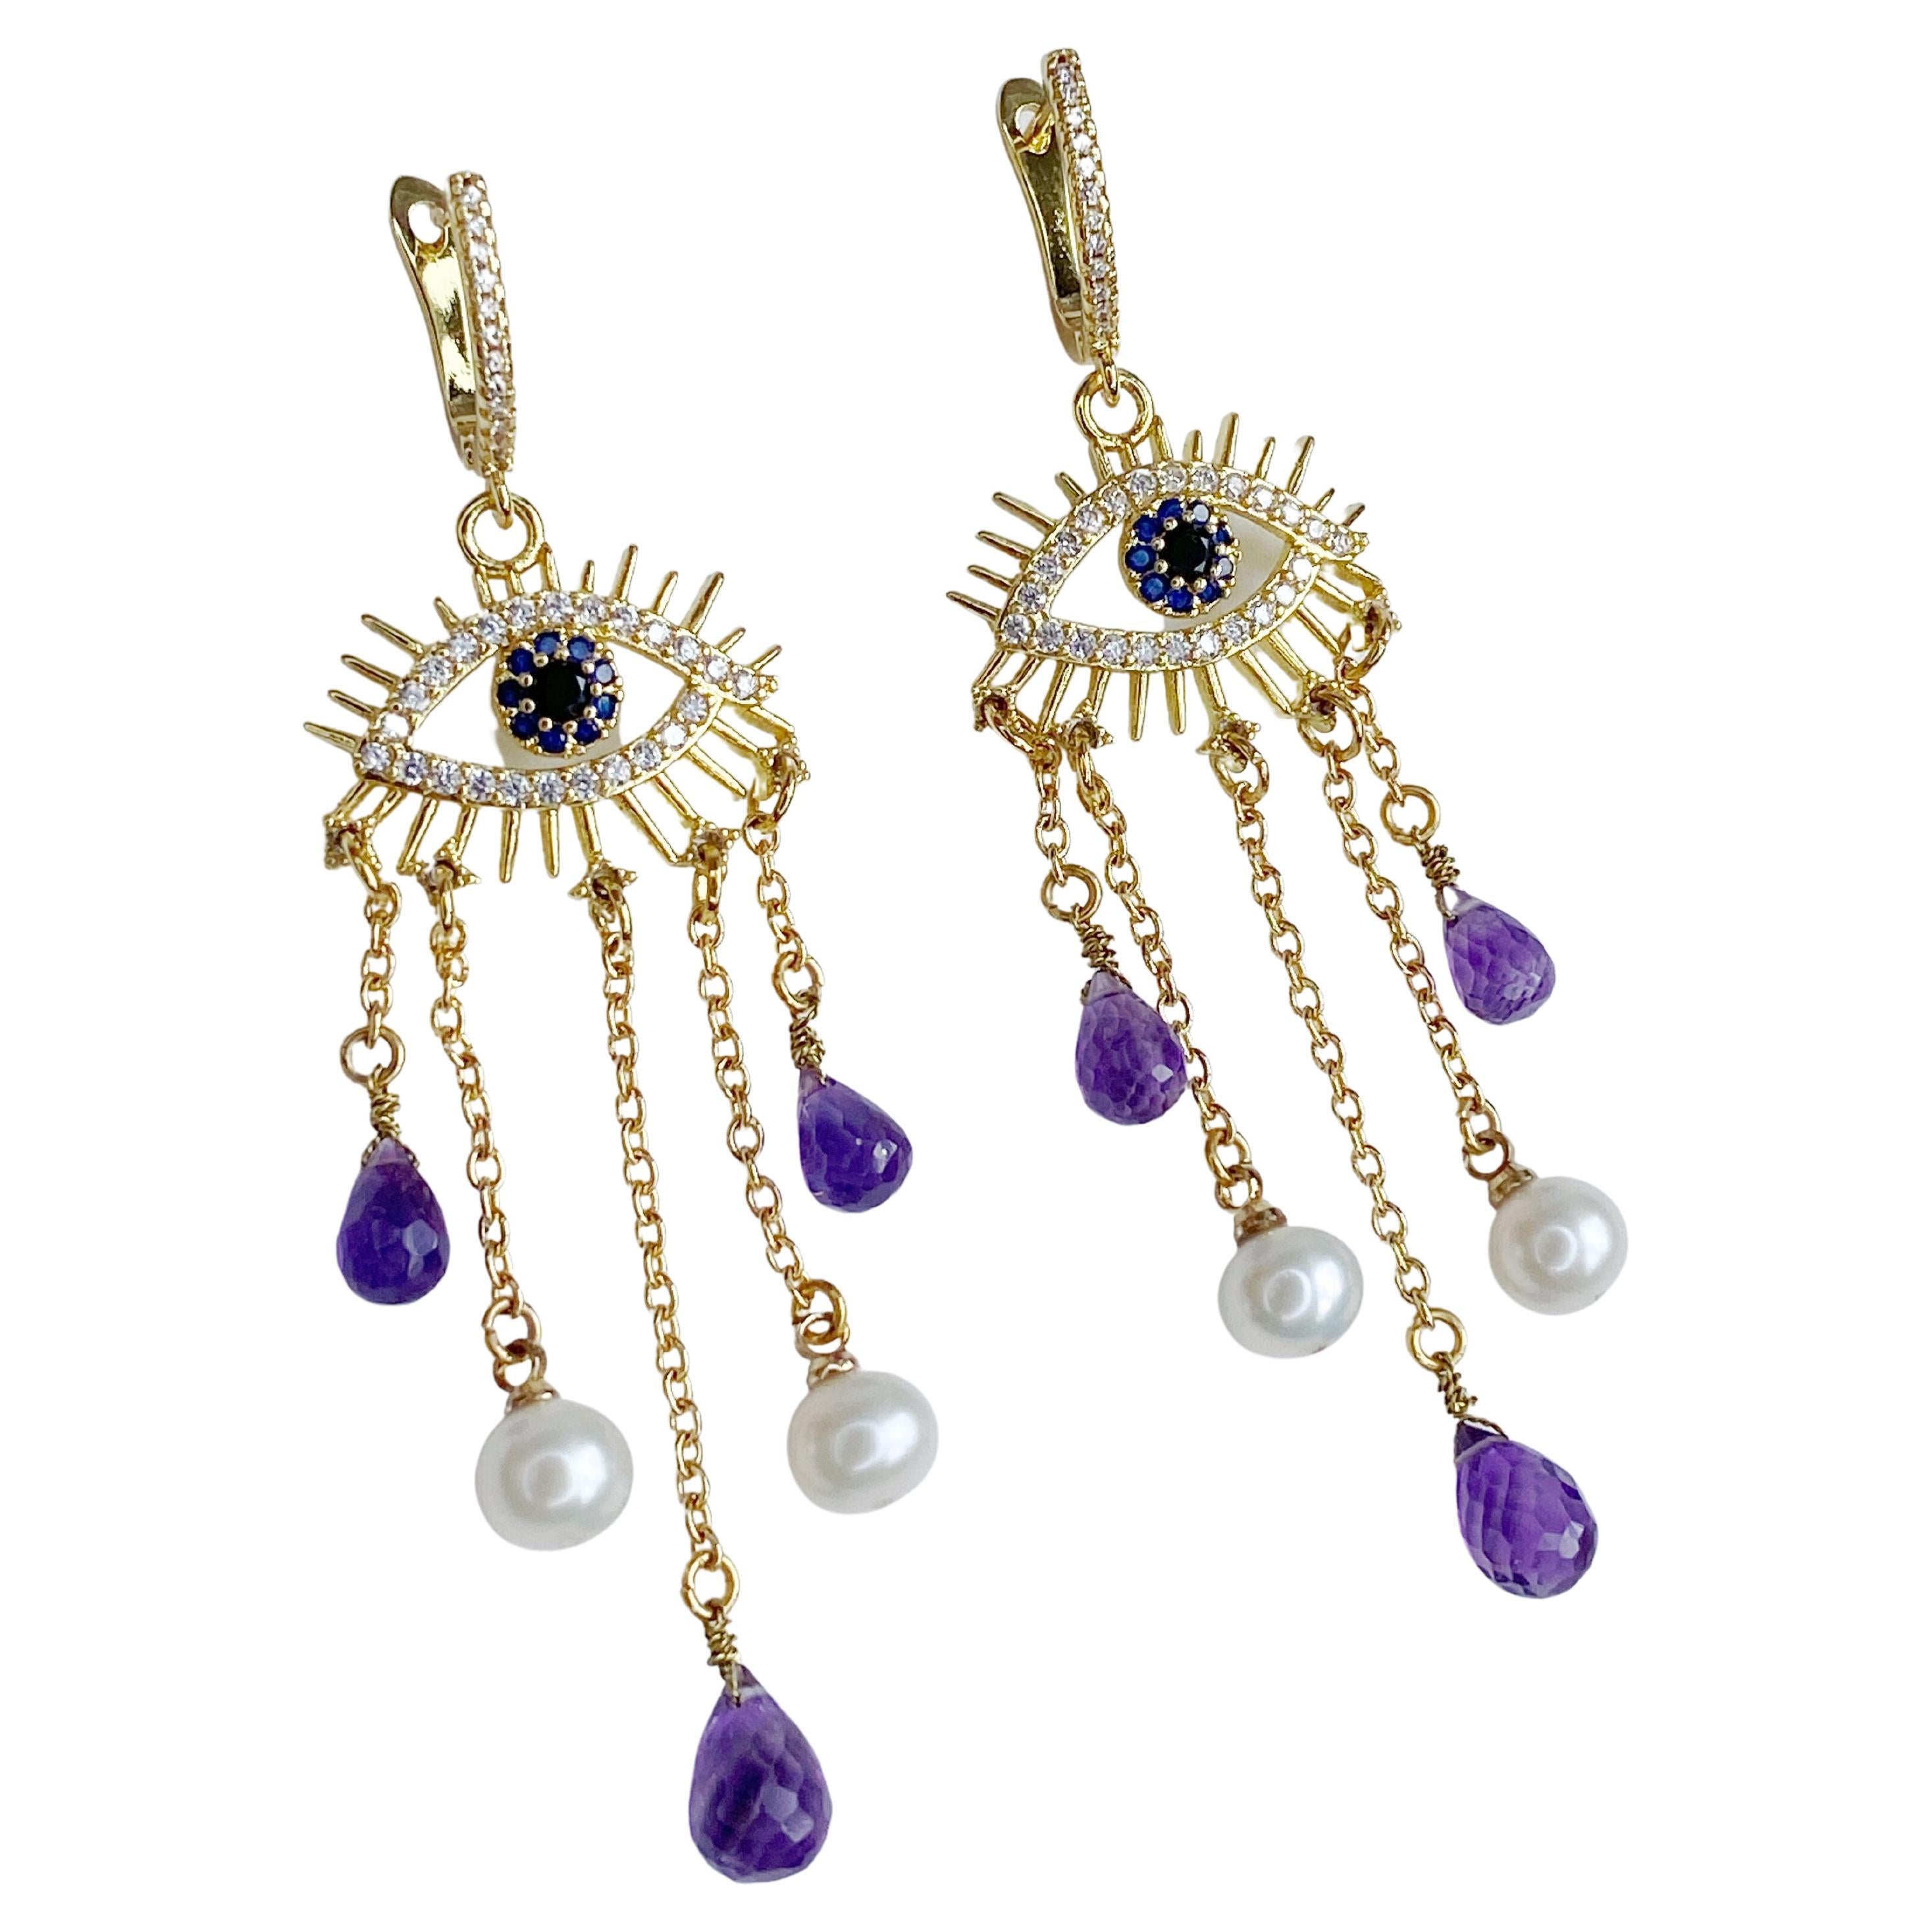 Amethyst and pearl earrings